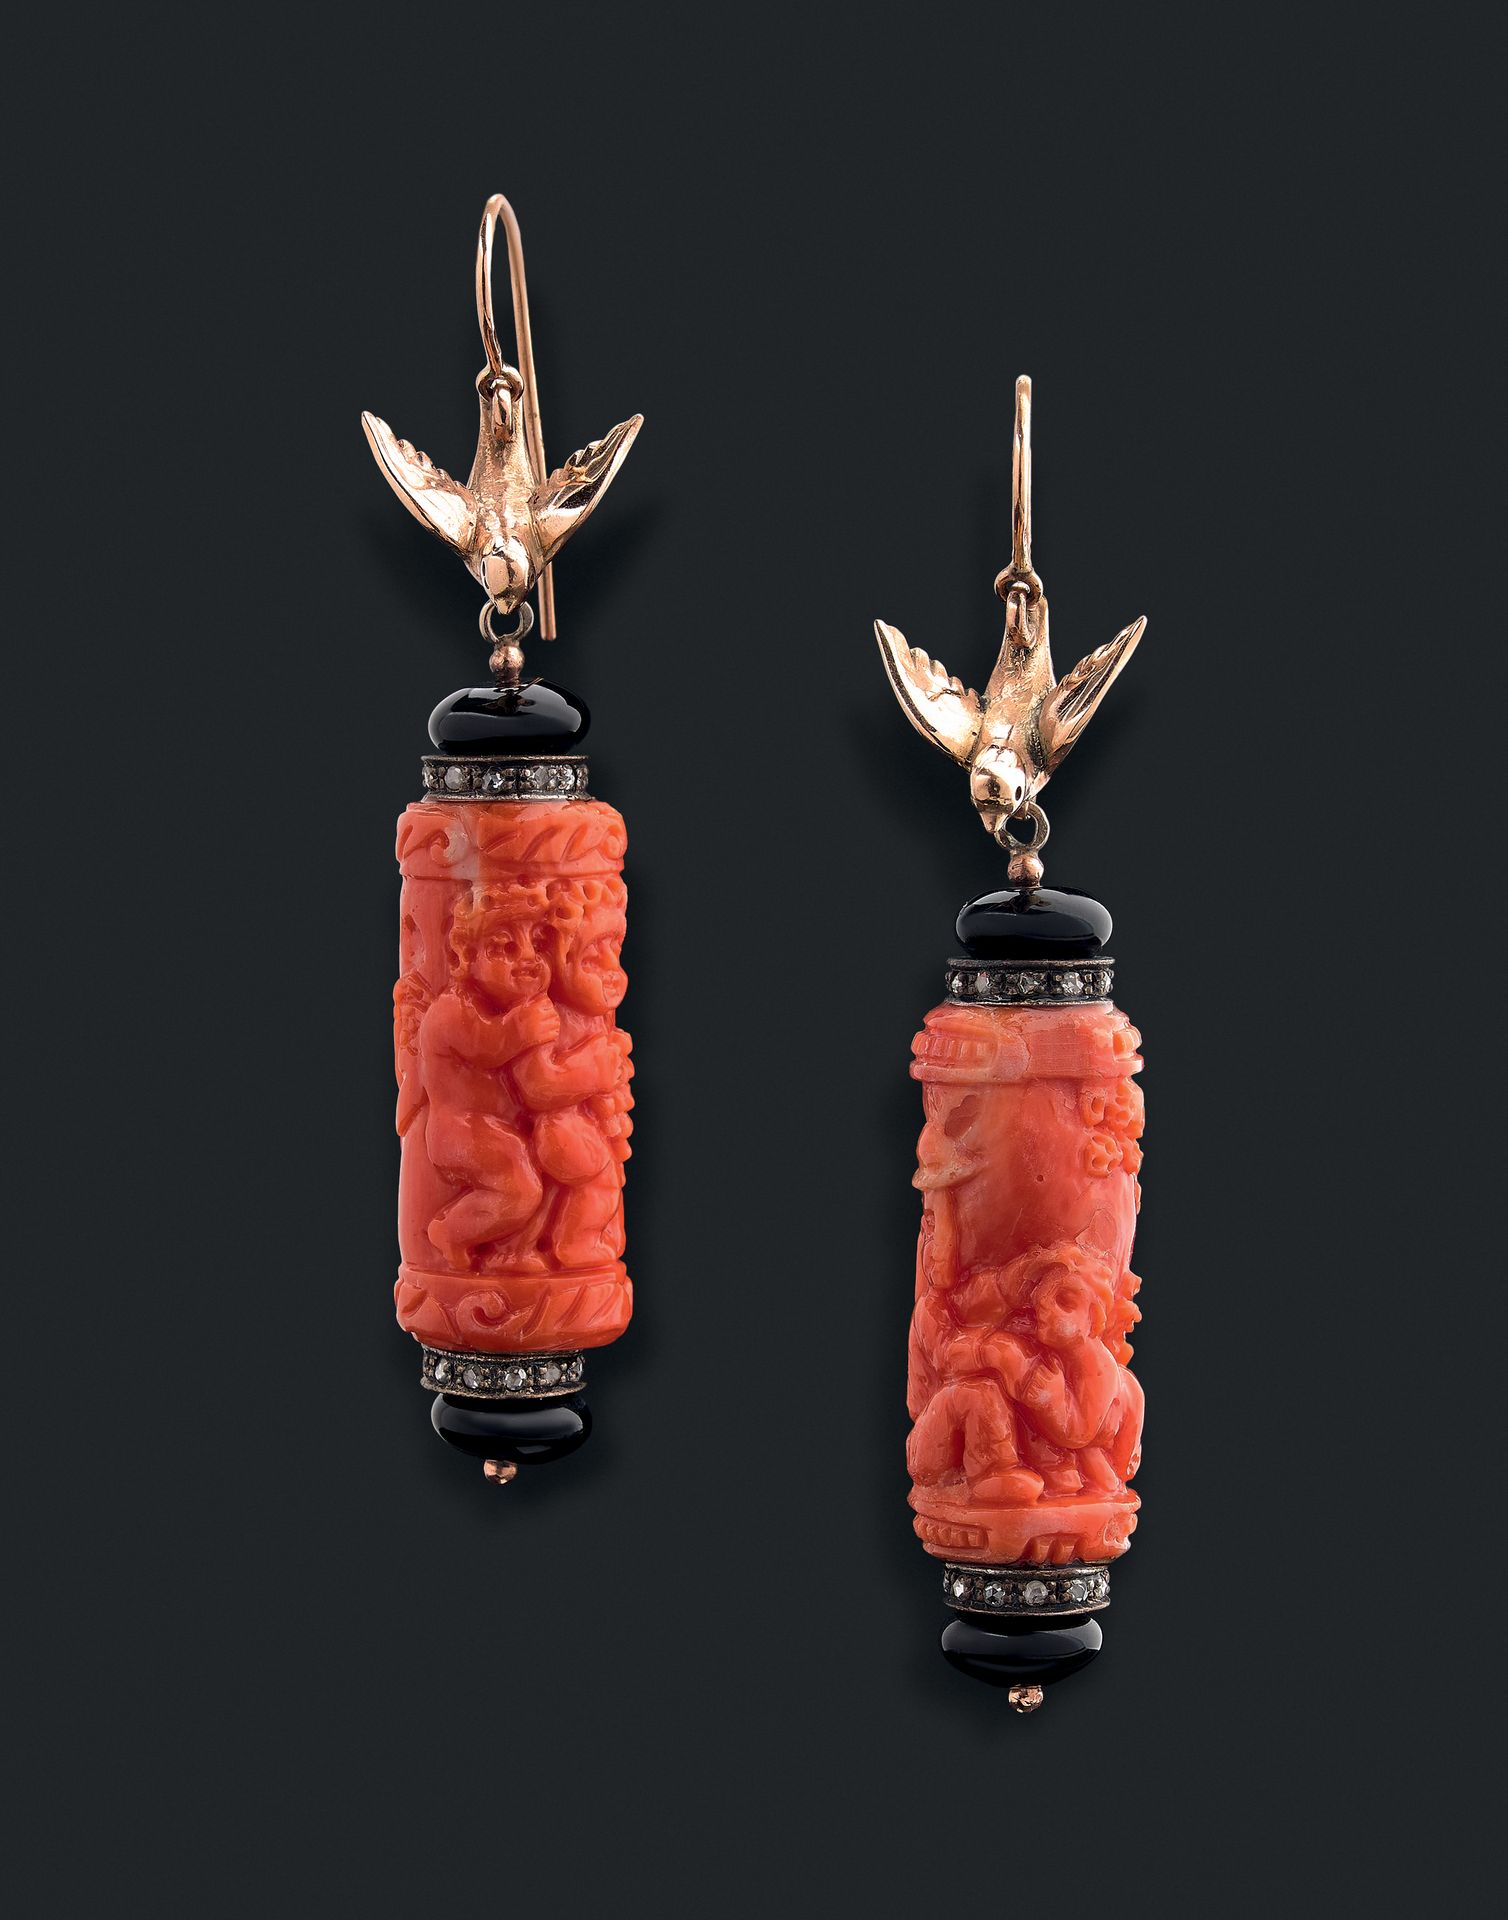 Null 艺术装饰

耳环一对 

手持雕刻有8/8钻石和黑玛瑙的珊瑚圆柱。它们被一只14K黄金的小鸟托着。用于穿耳的系统。 

长度：6.1厘米。

毛重：2&hellip;